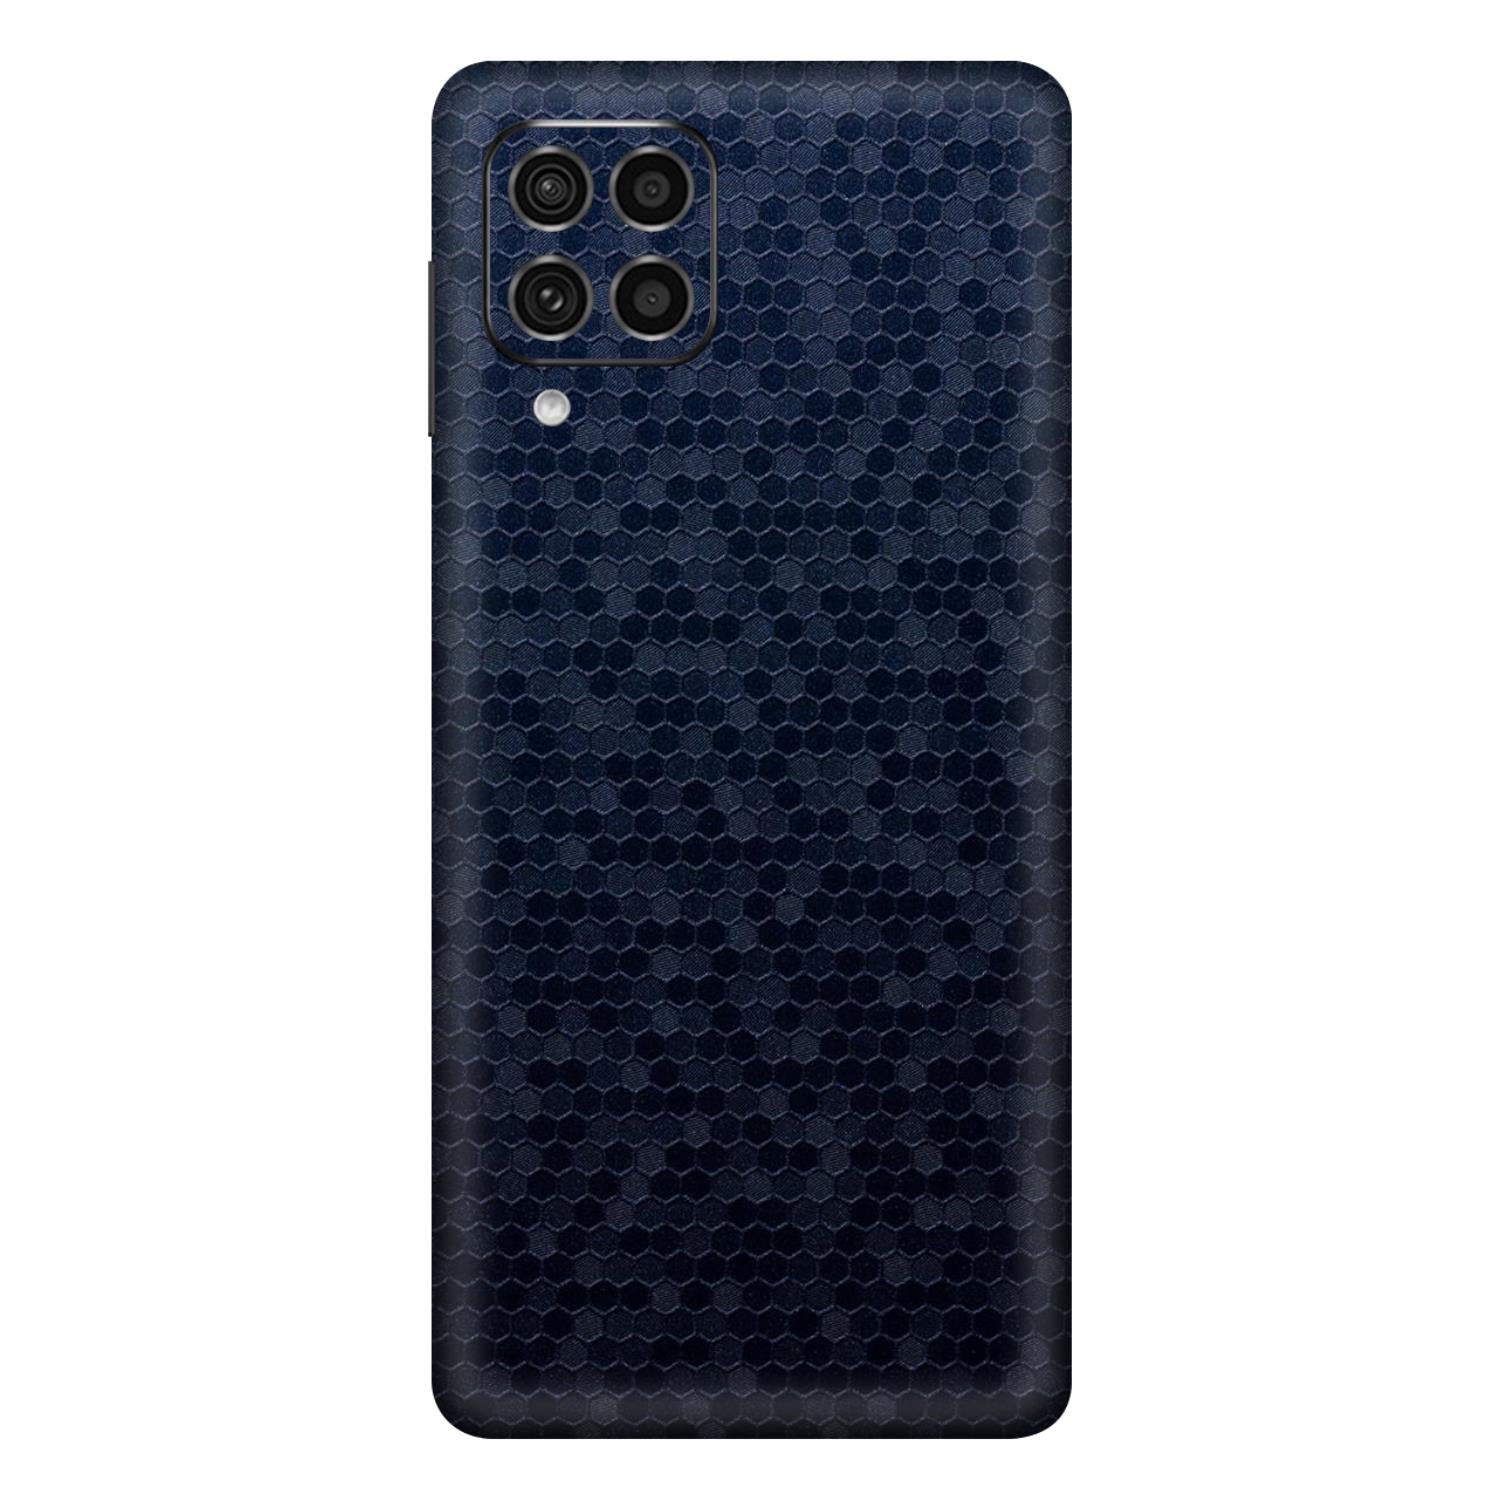 Samsung Galaxy F62 Skins & Wraps